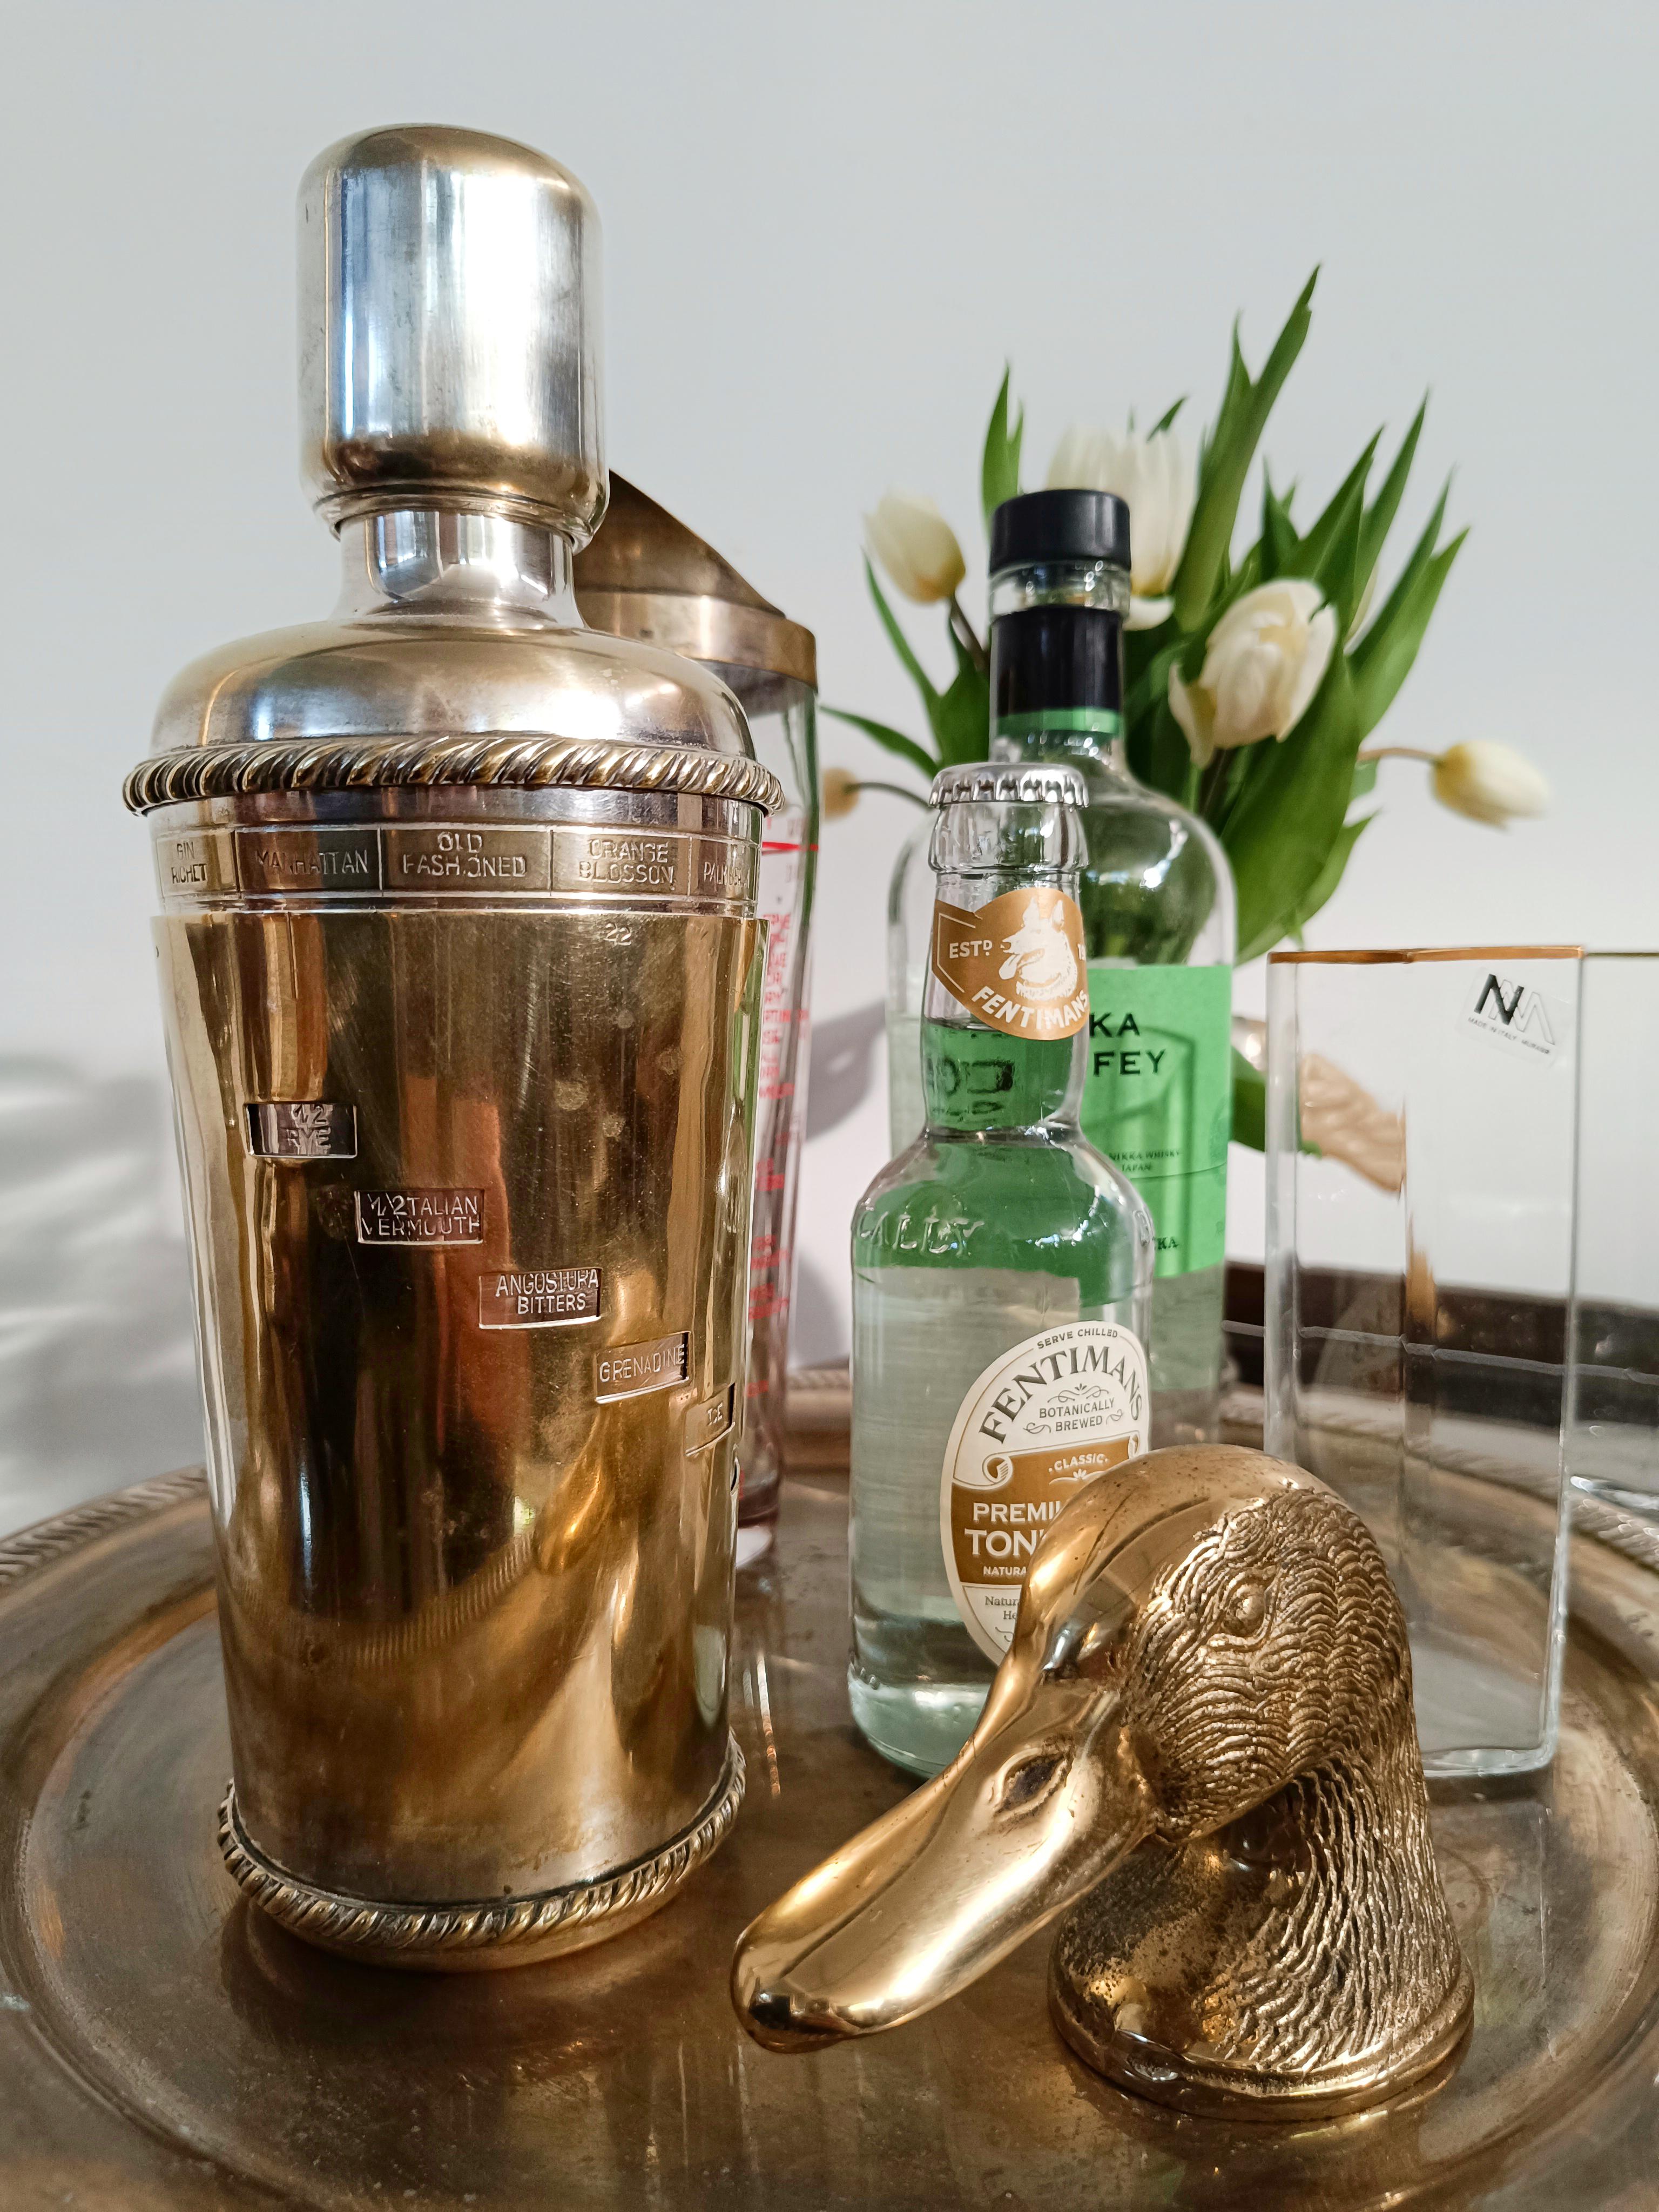 Ein fabelhafter Cocktail-Shaker nach italienischem Rezept, hergestellt in Italien von der historischen römischen Firma 